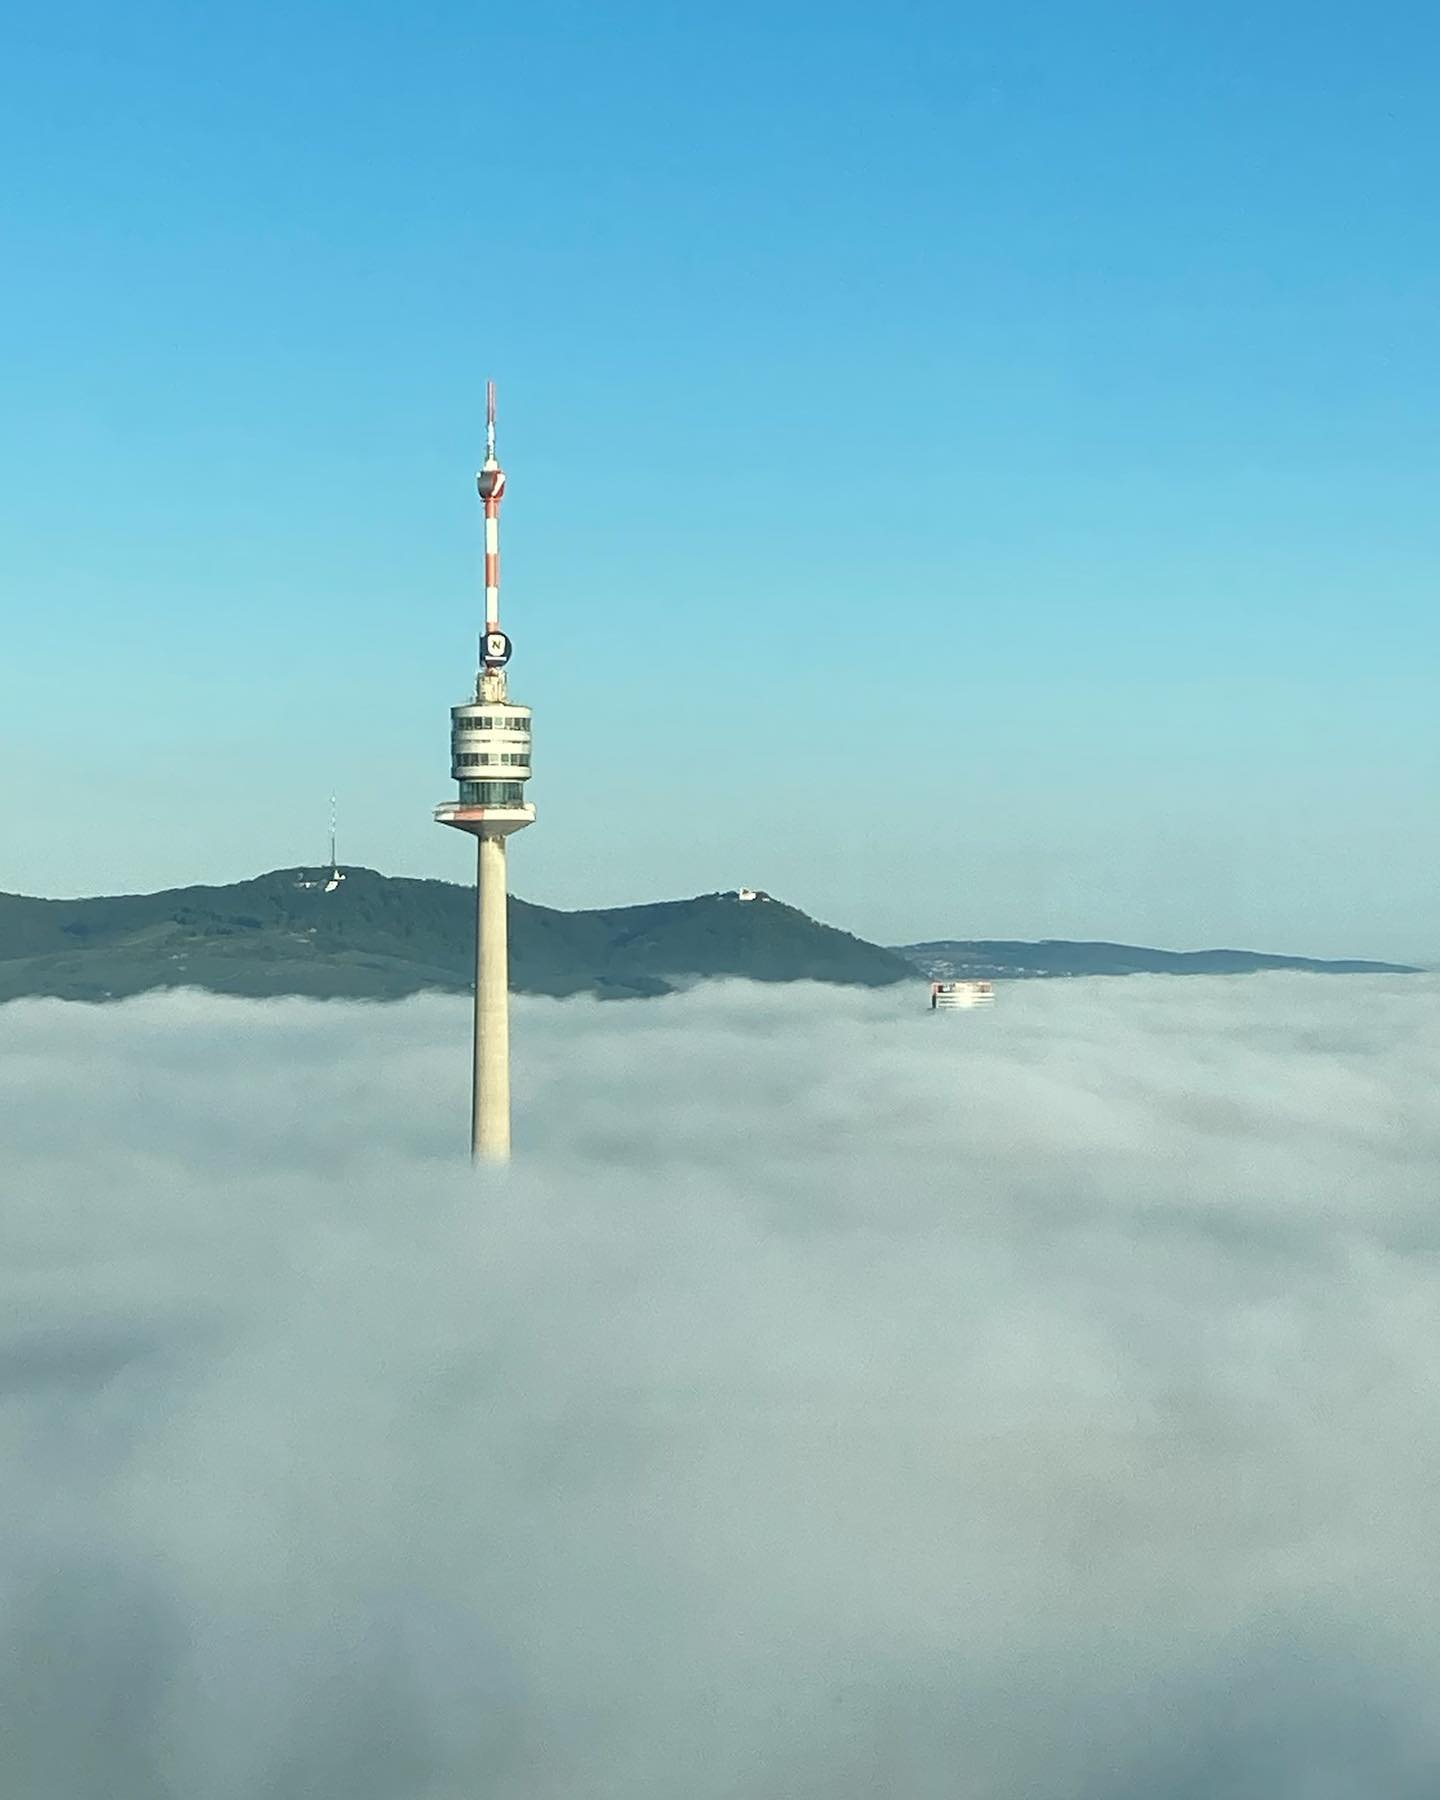 Just in time for the beginning of autumn  fog over Vienna<br />
.<br />
.<br />
.<br />
#nebel #nebelstimmung #donauturm #fog #foggymorning #sonneübernebel #mystic #wienliebe #viennalove #greattower